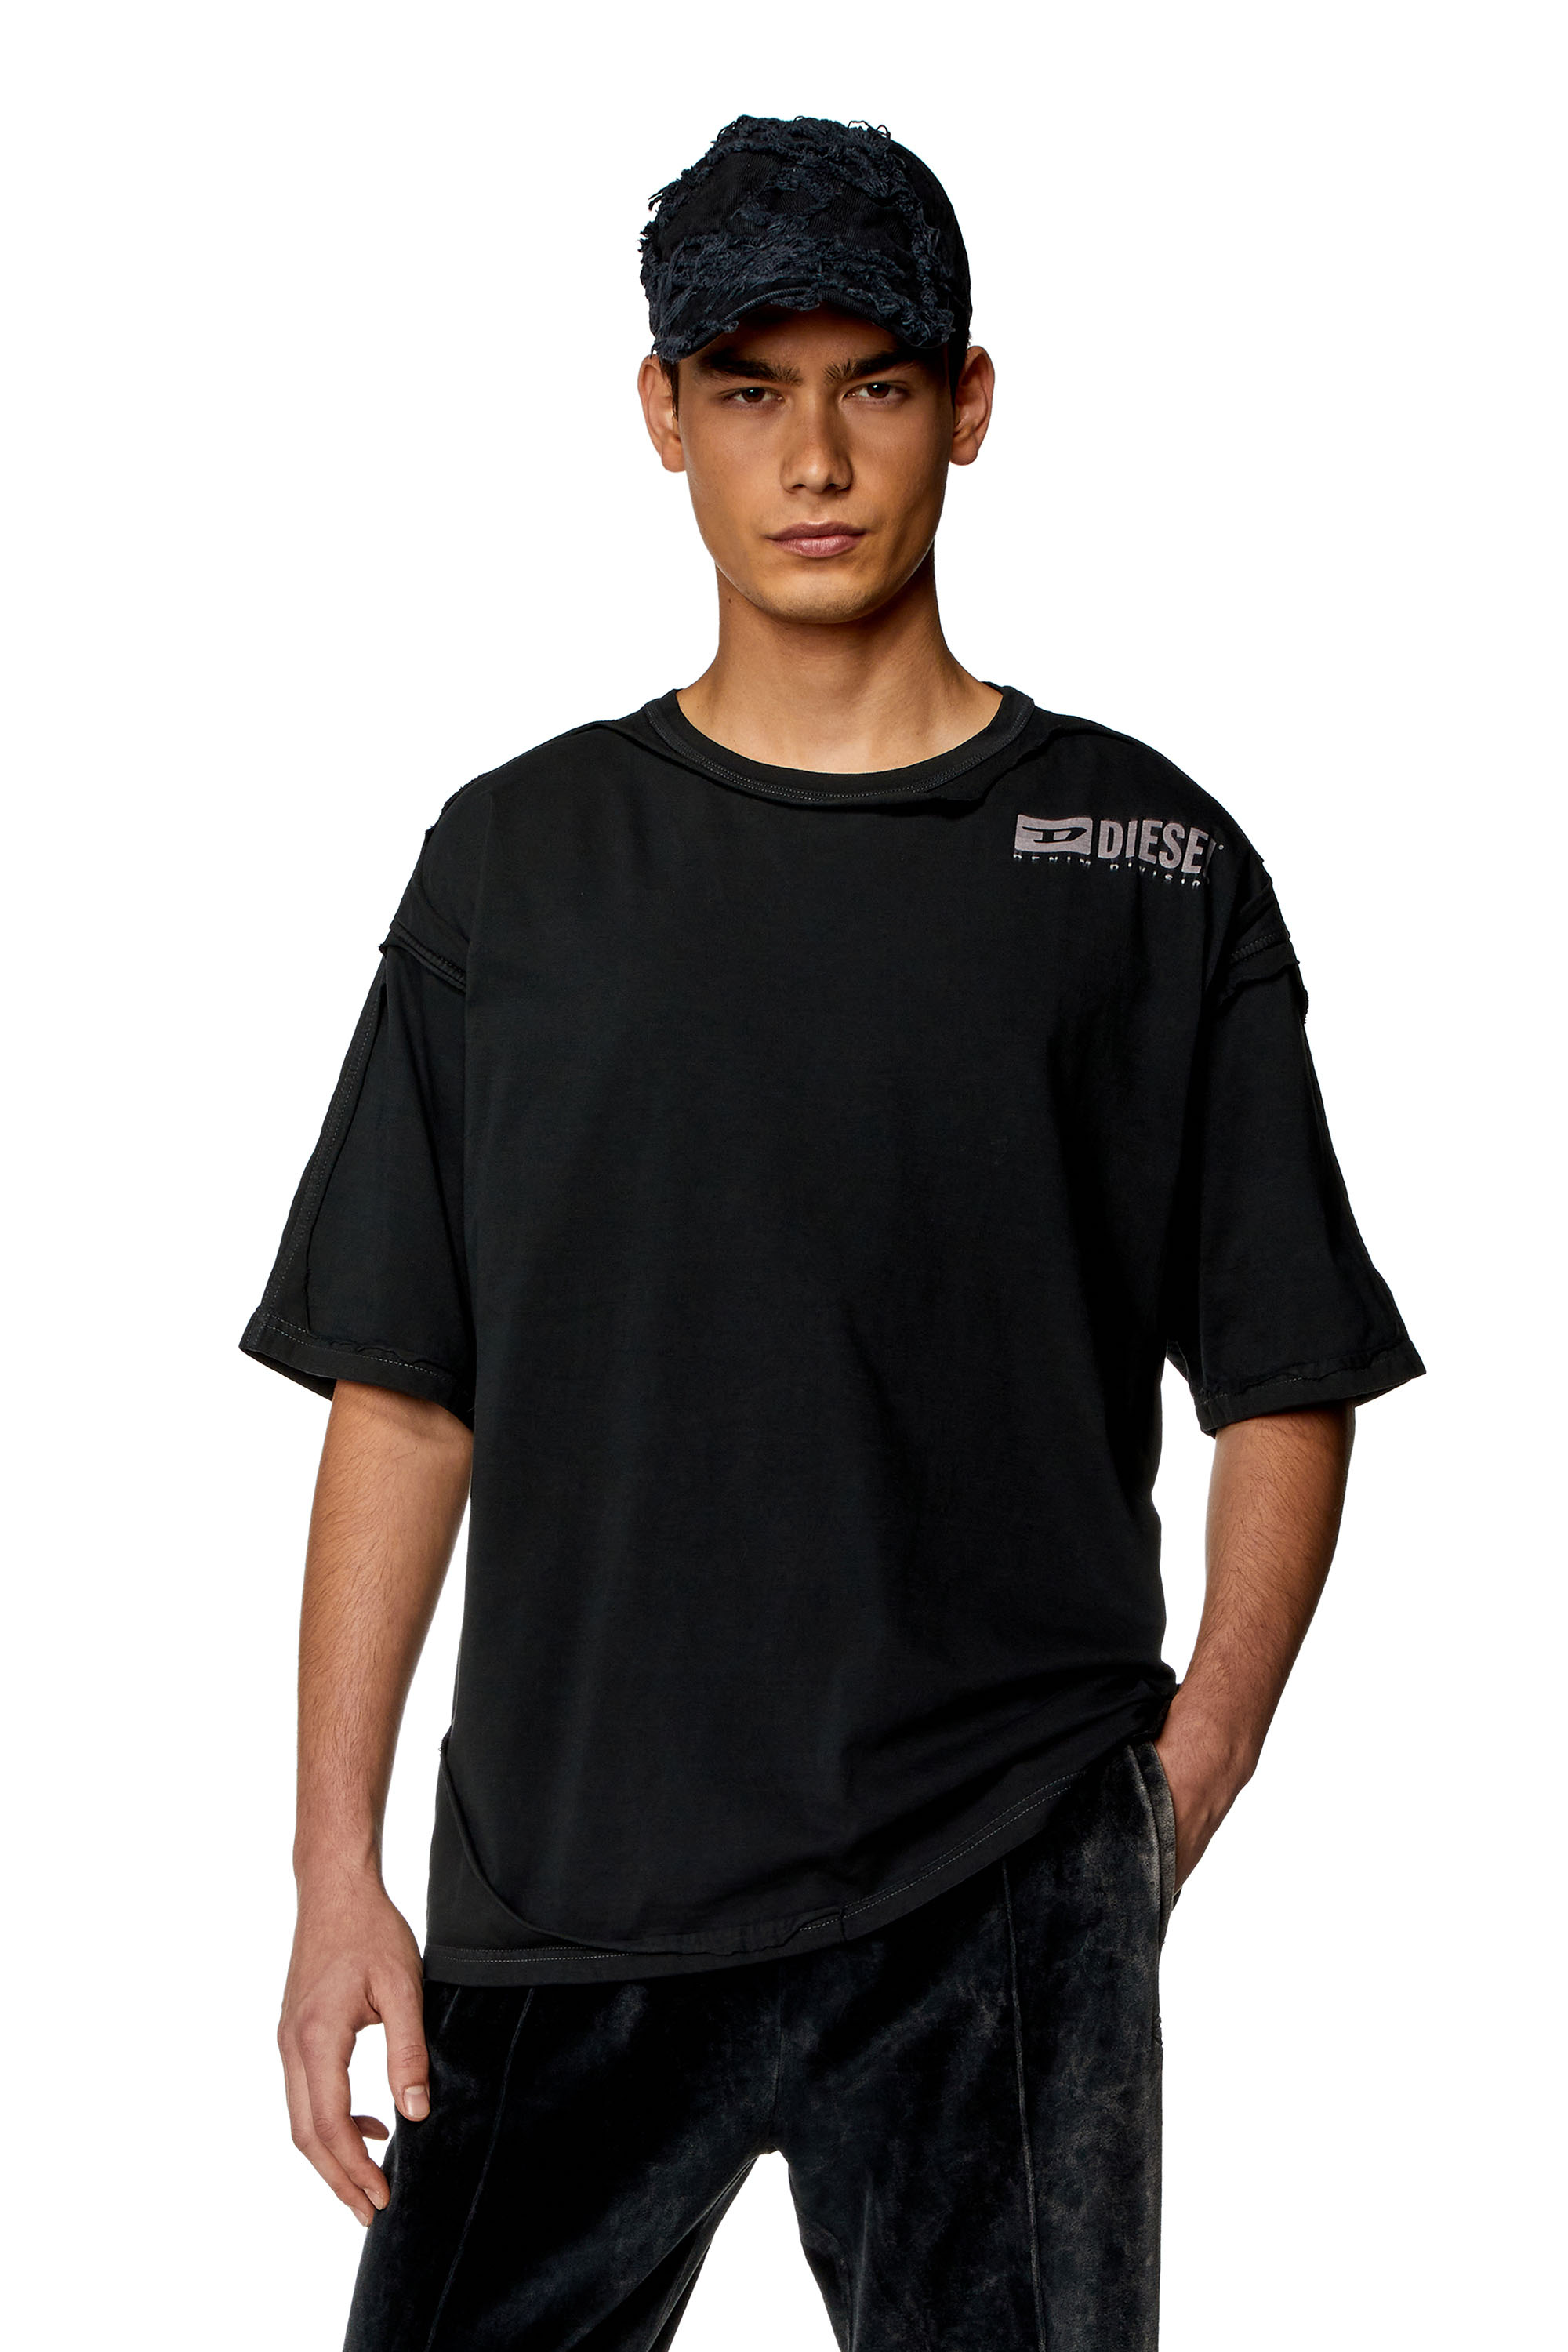 Diesel - Camiseta con efecto roto despegado - Camisetas - Hombre - Negro